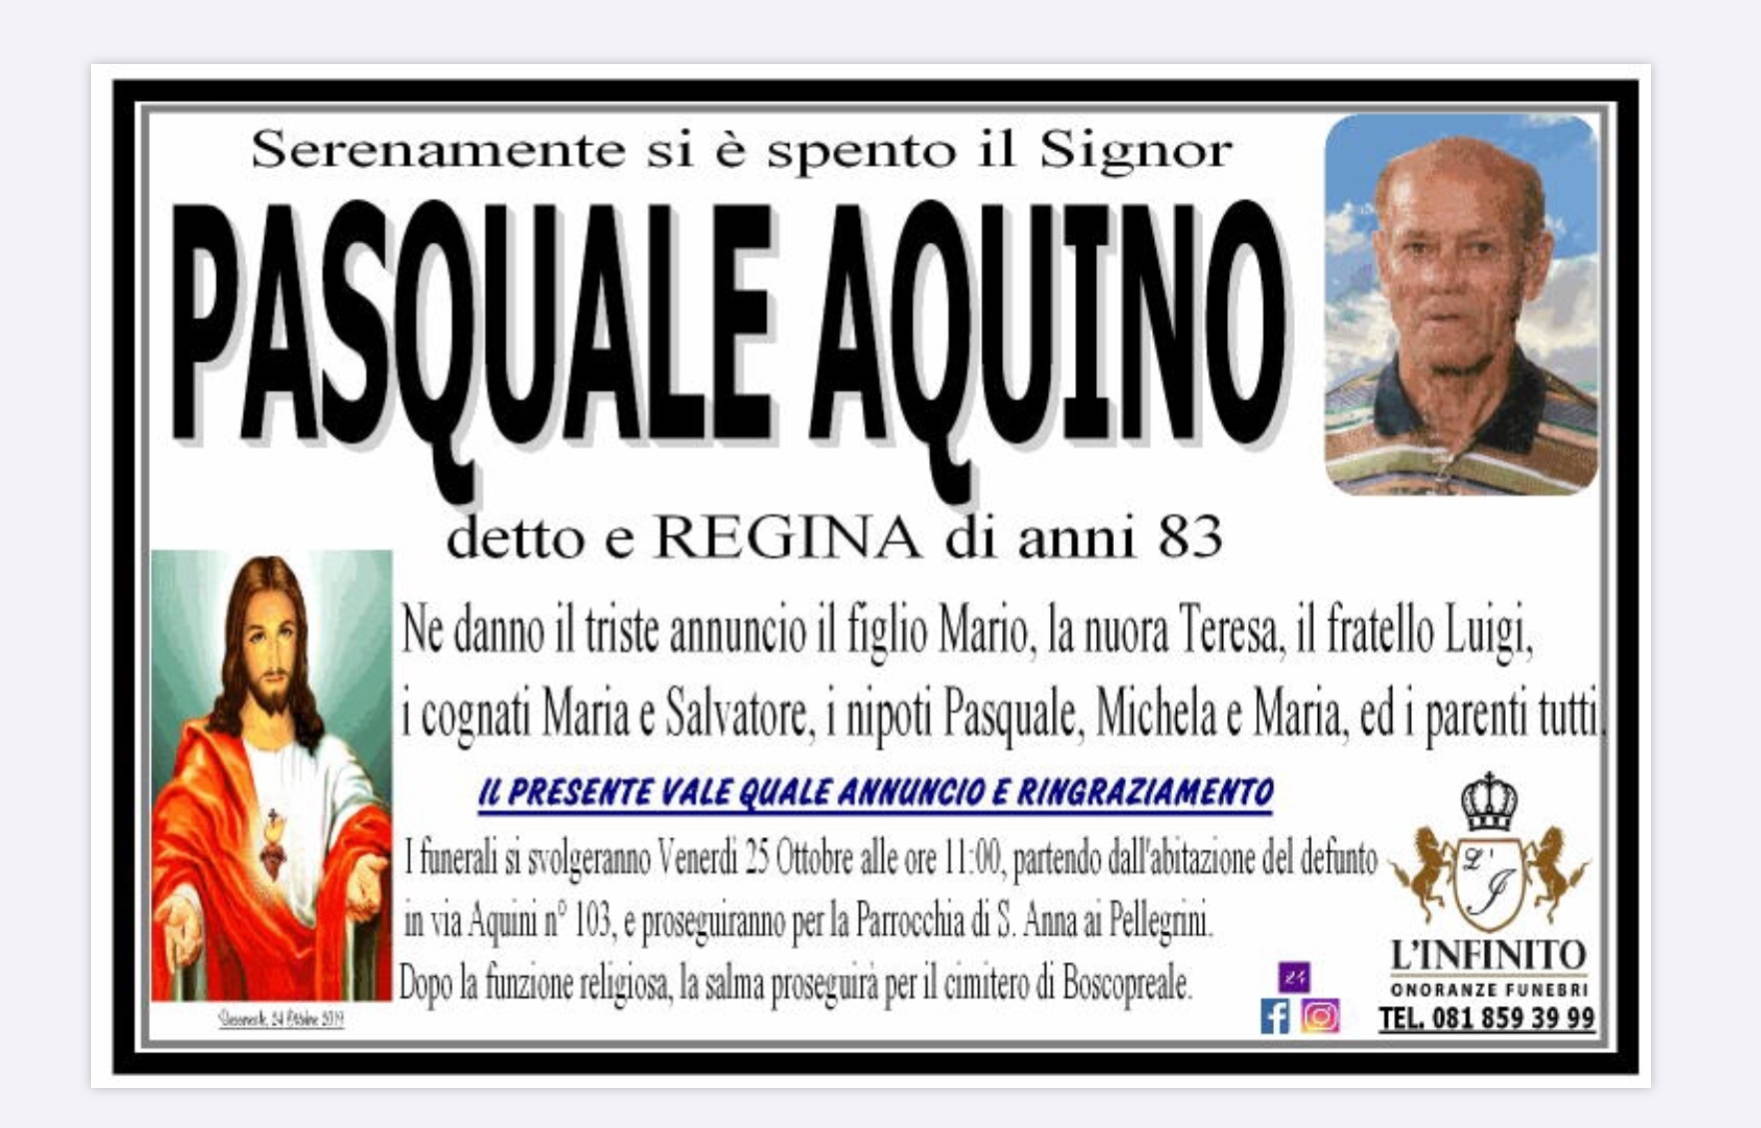 Pasquale Aquino